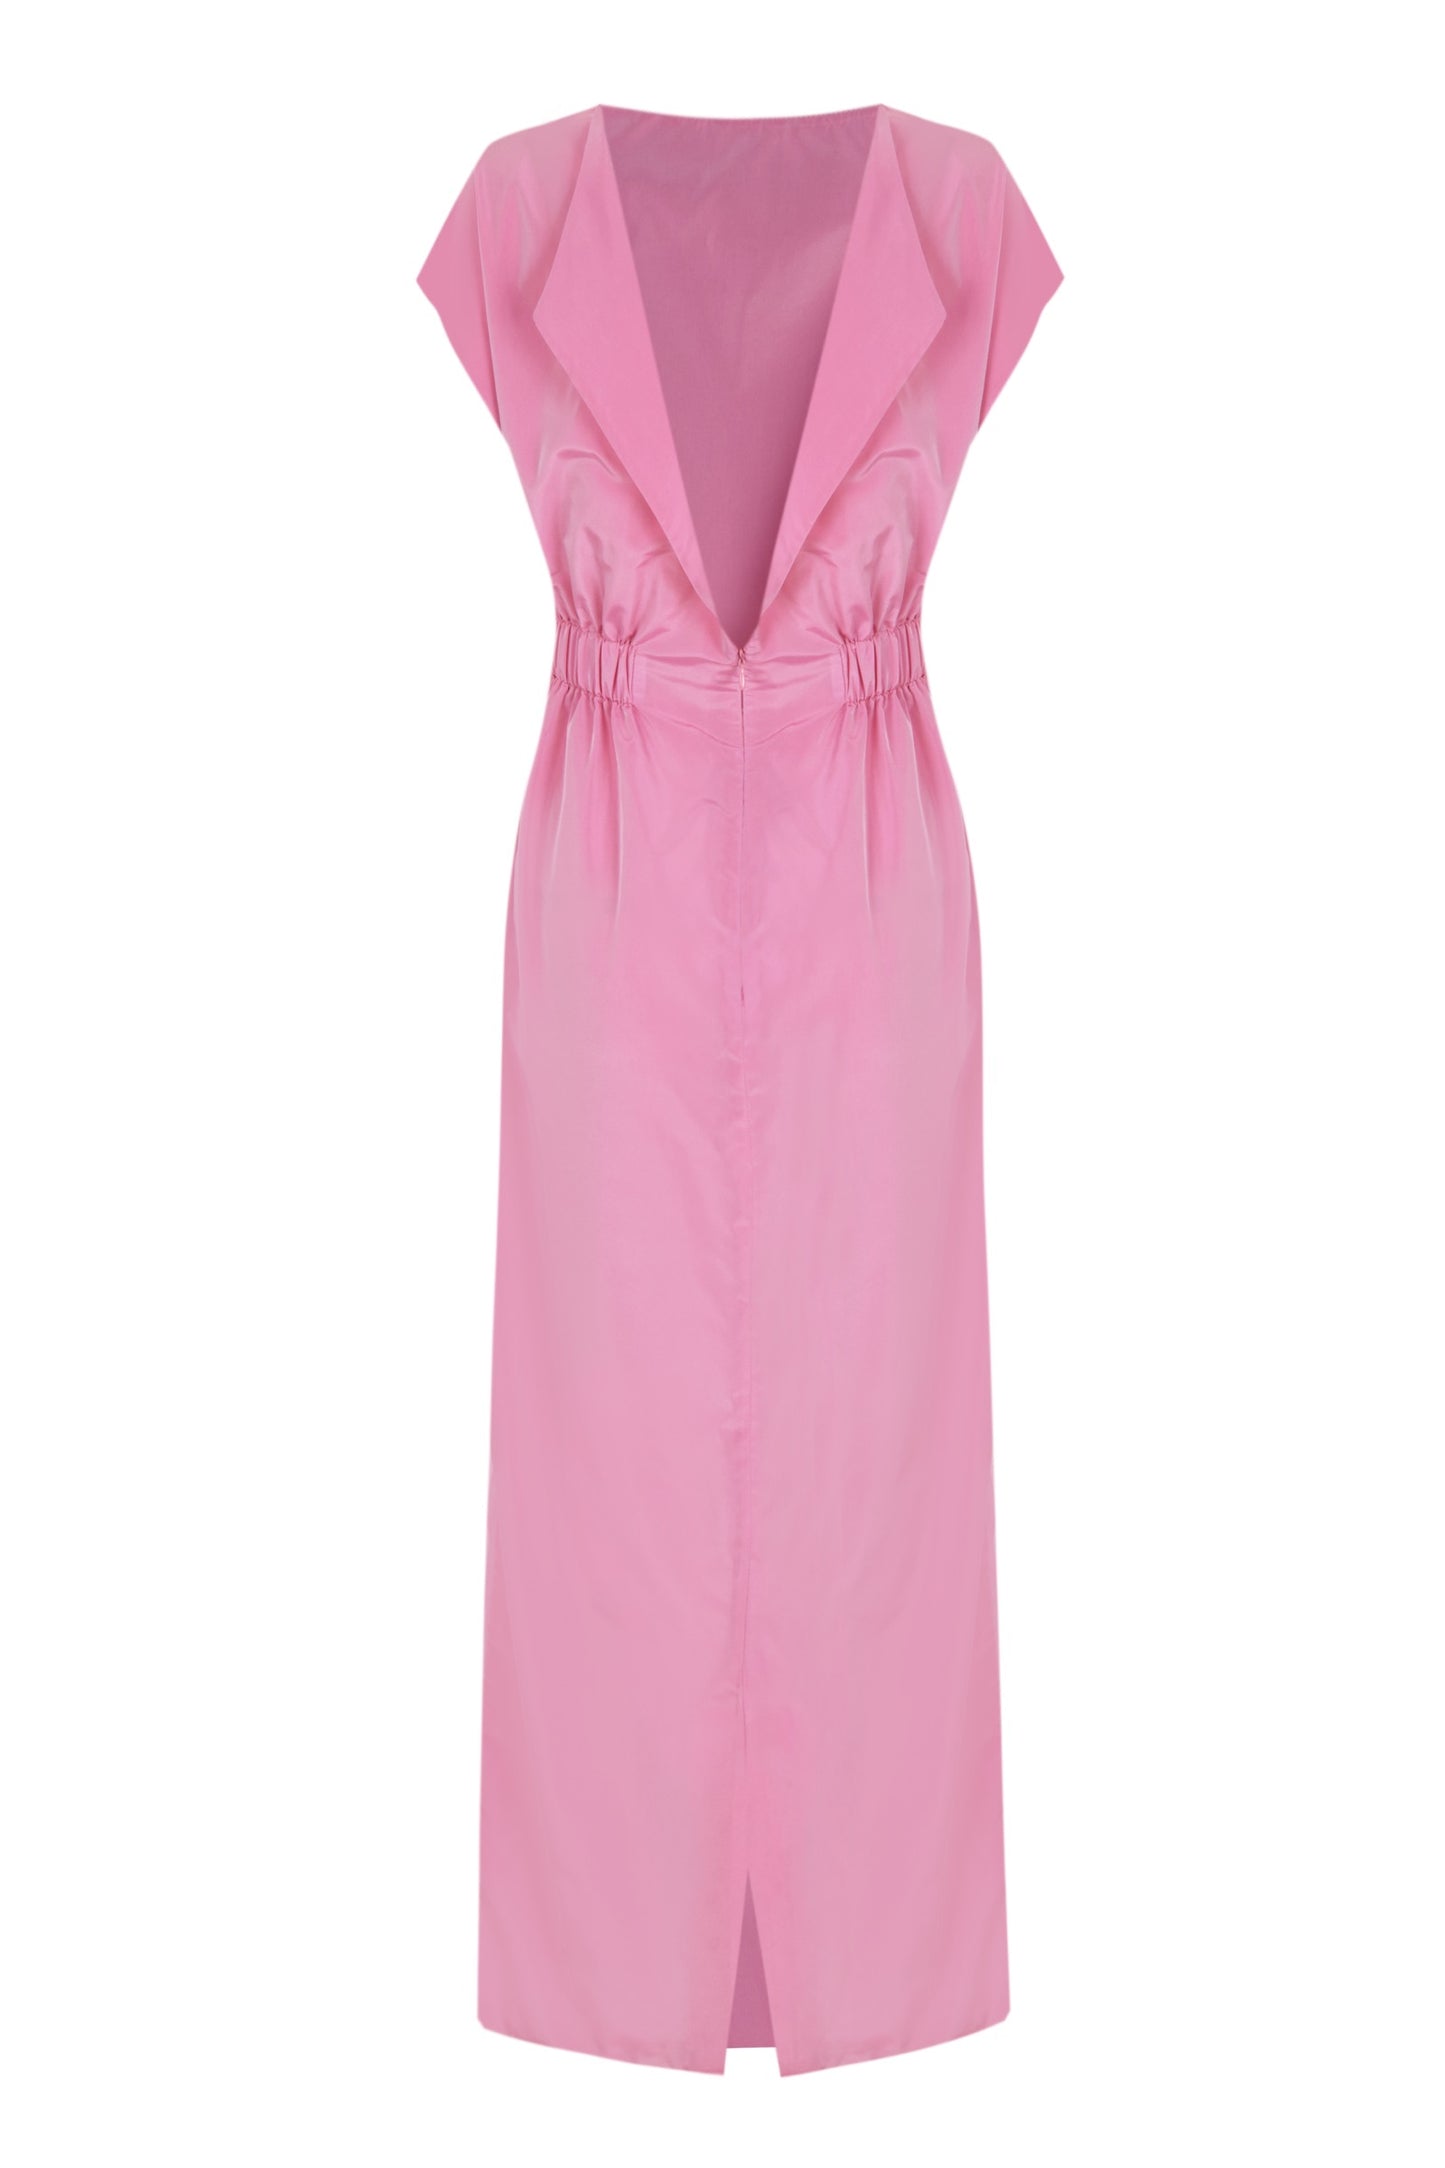 Pink taffeta dress